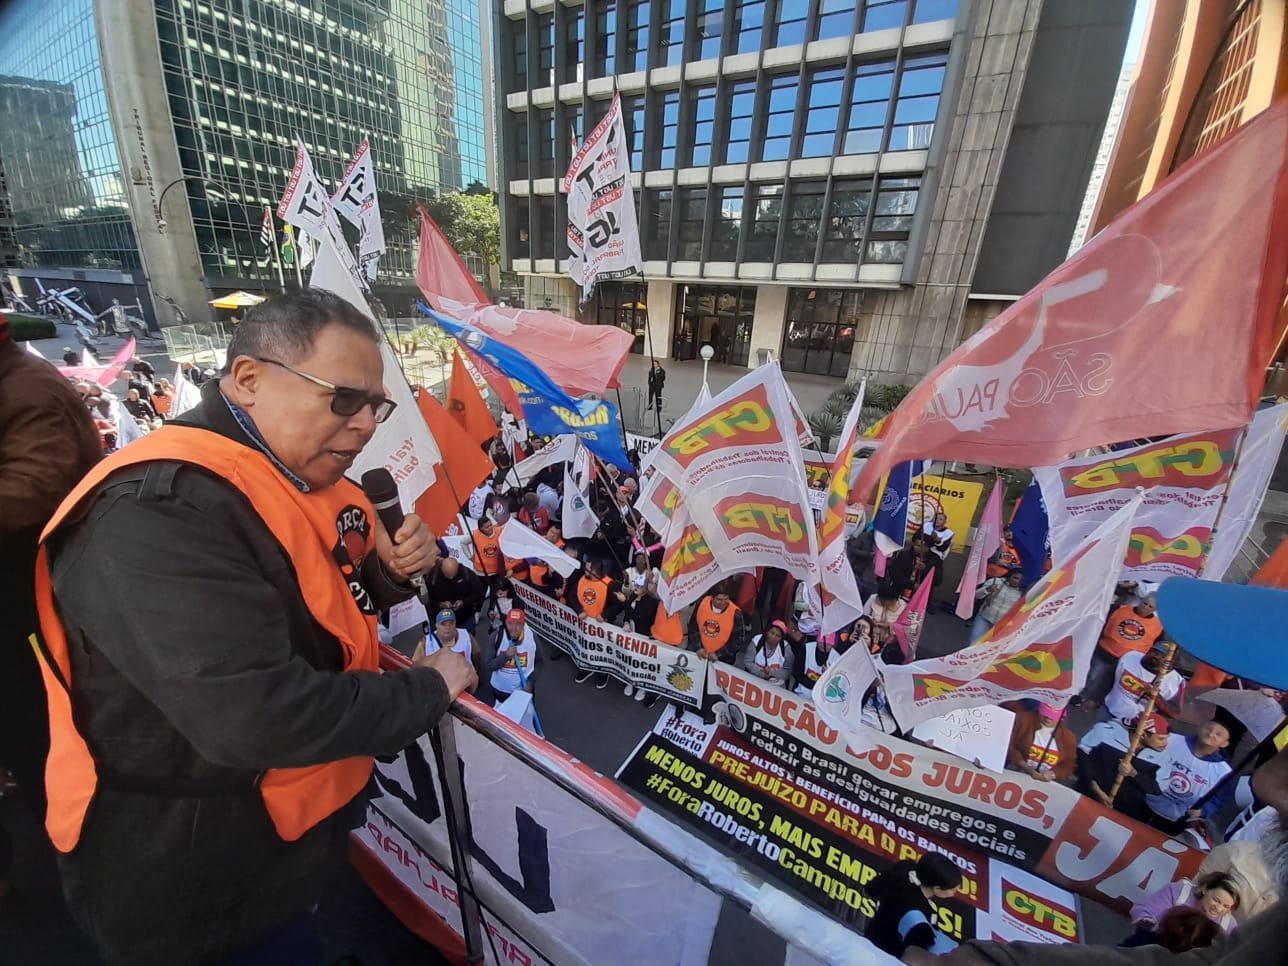 Sindicalistas criticam atual política do Banco Central, comandado por Campos Neto que mantém a Taxa Selic em 13,75% ao ano, inibindo o investimento na produção e a geração de empregos